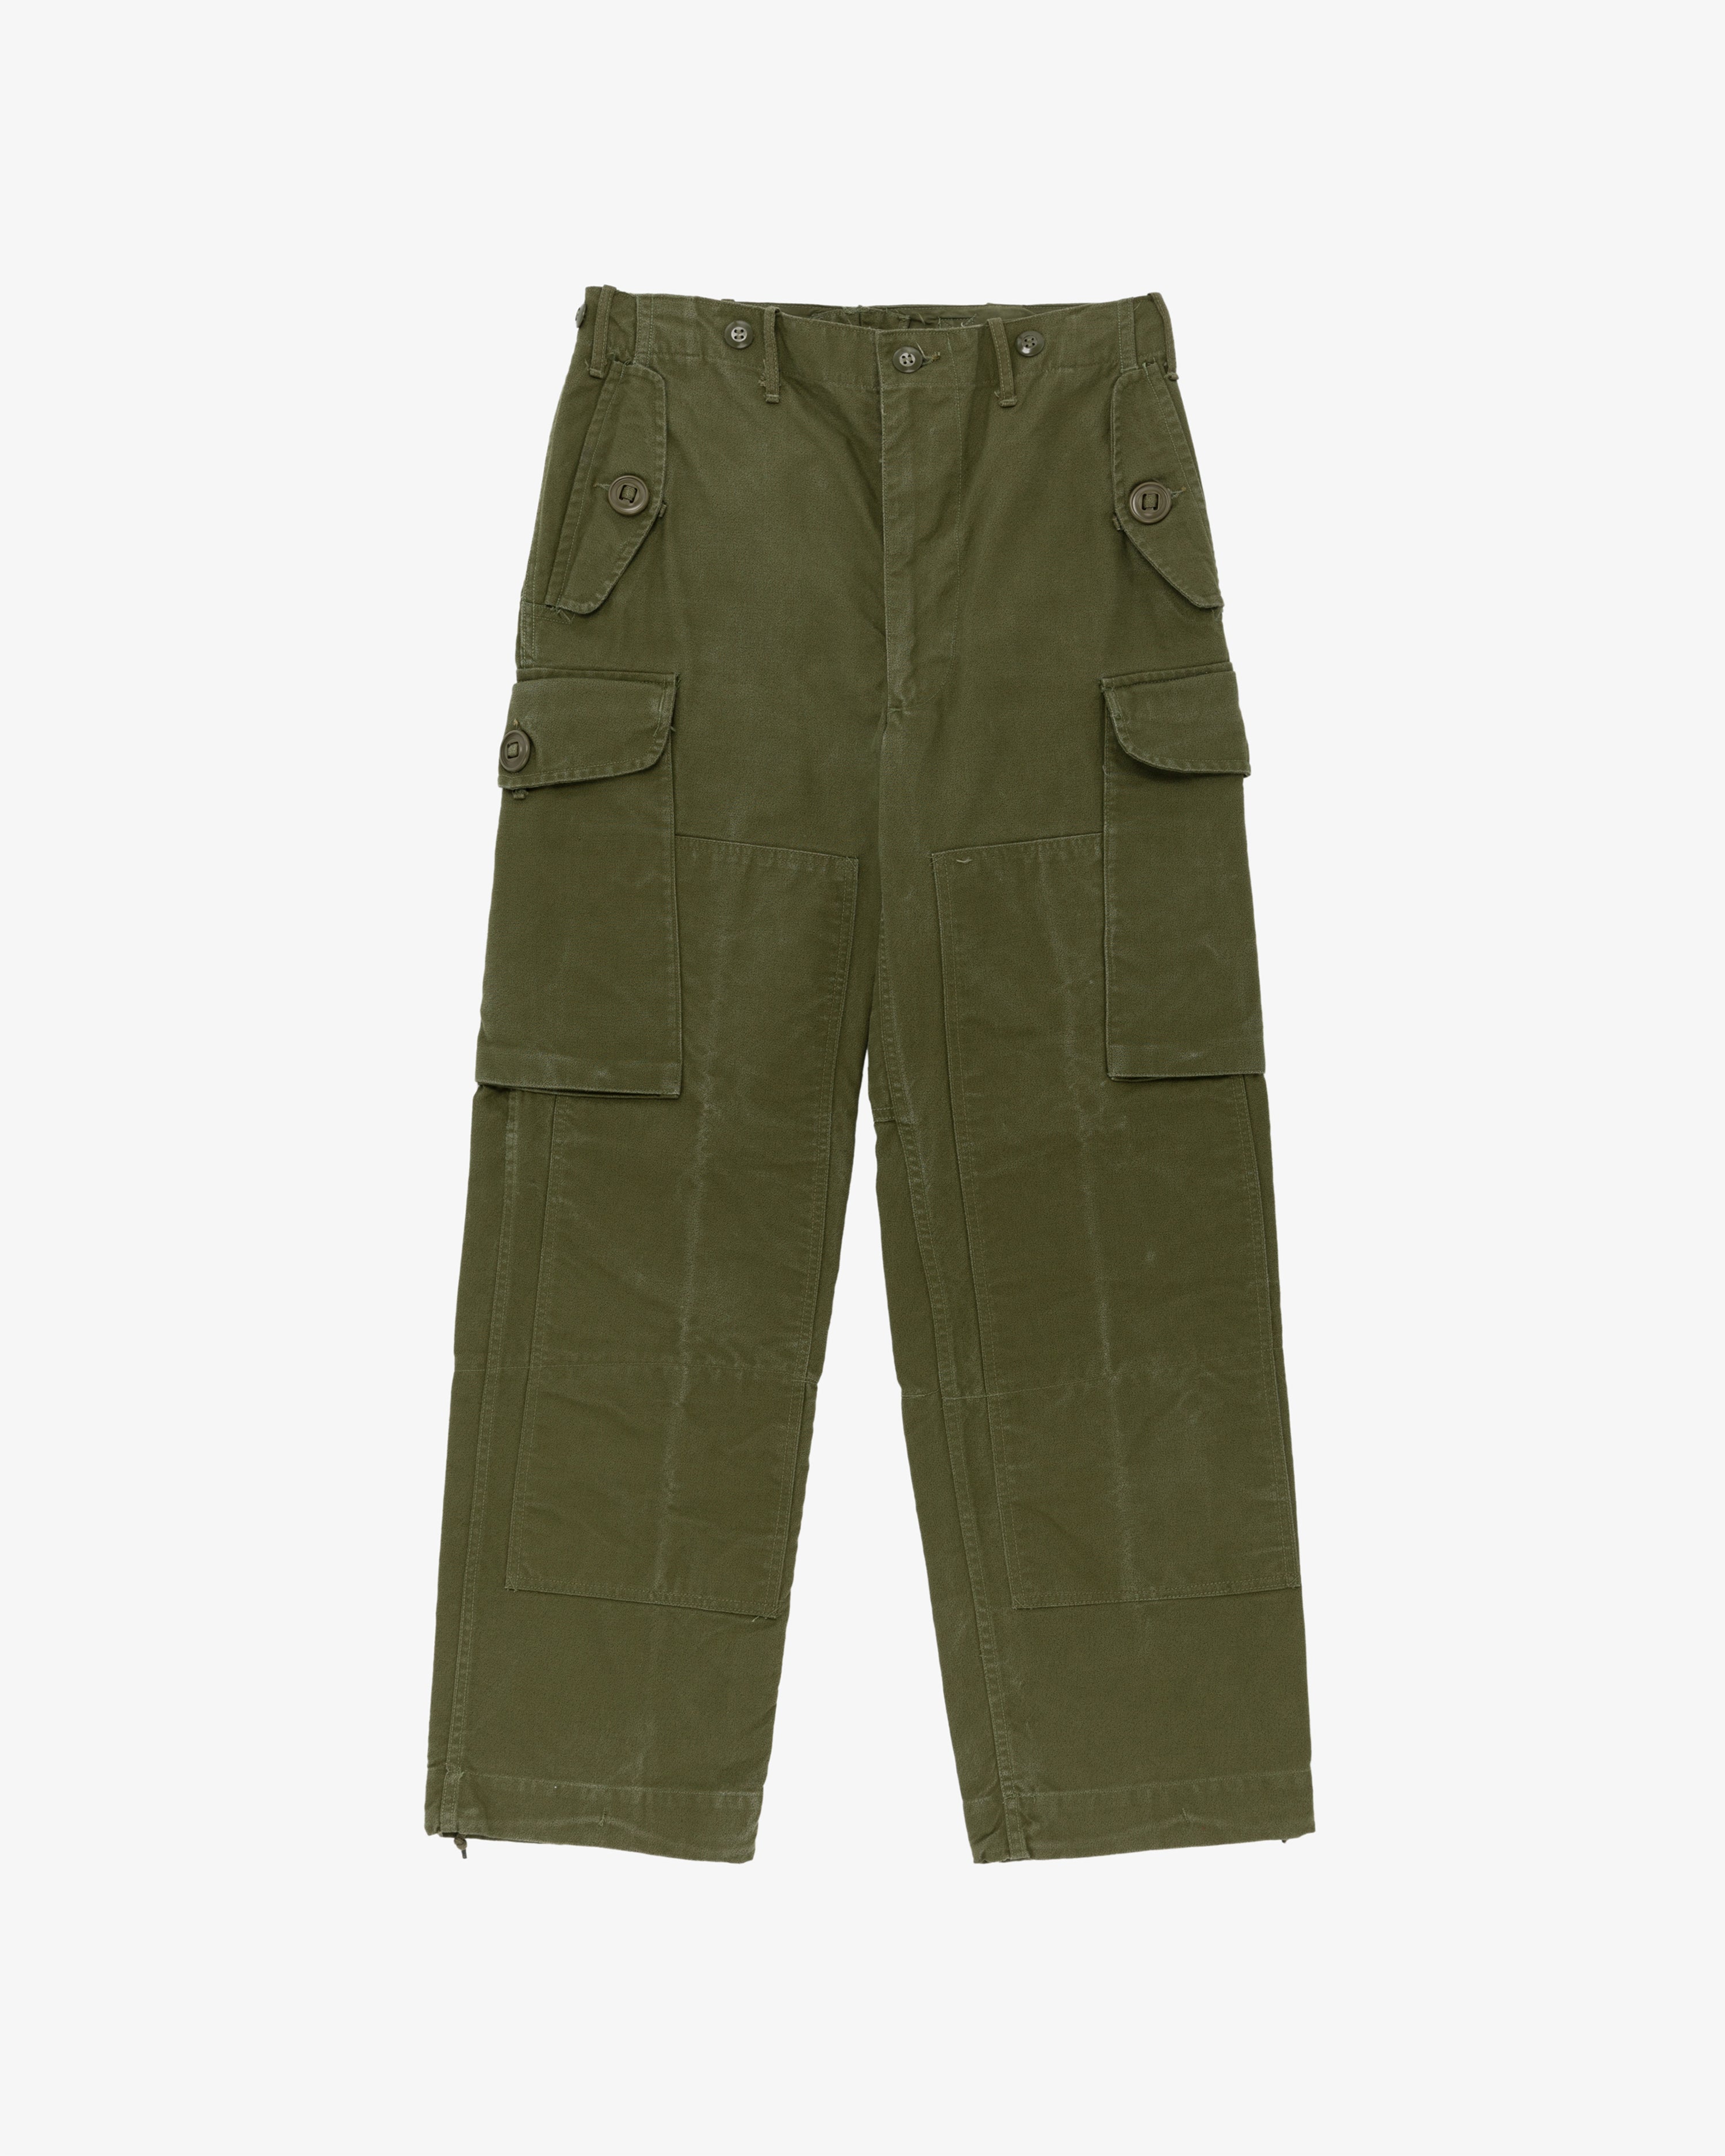 Vintage US Army Jungle Pant